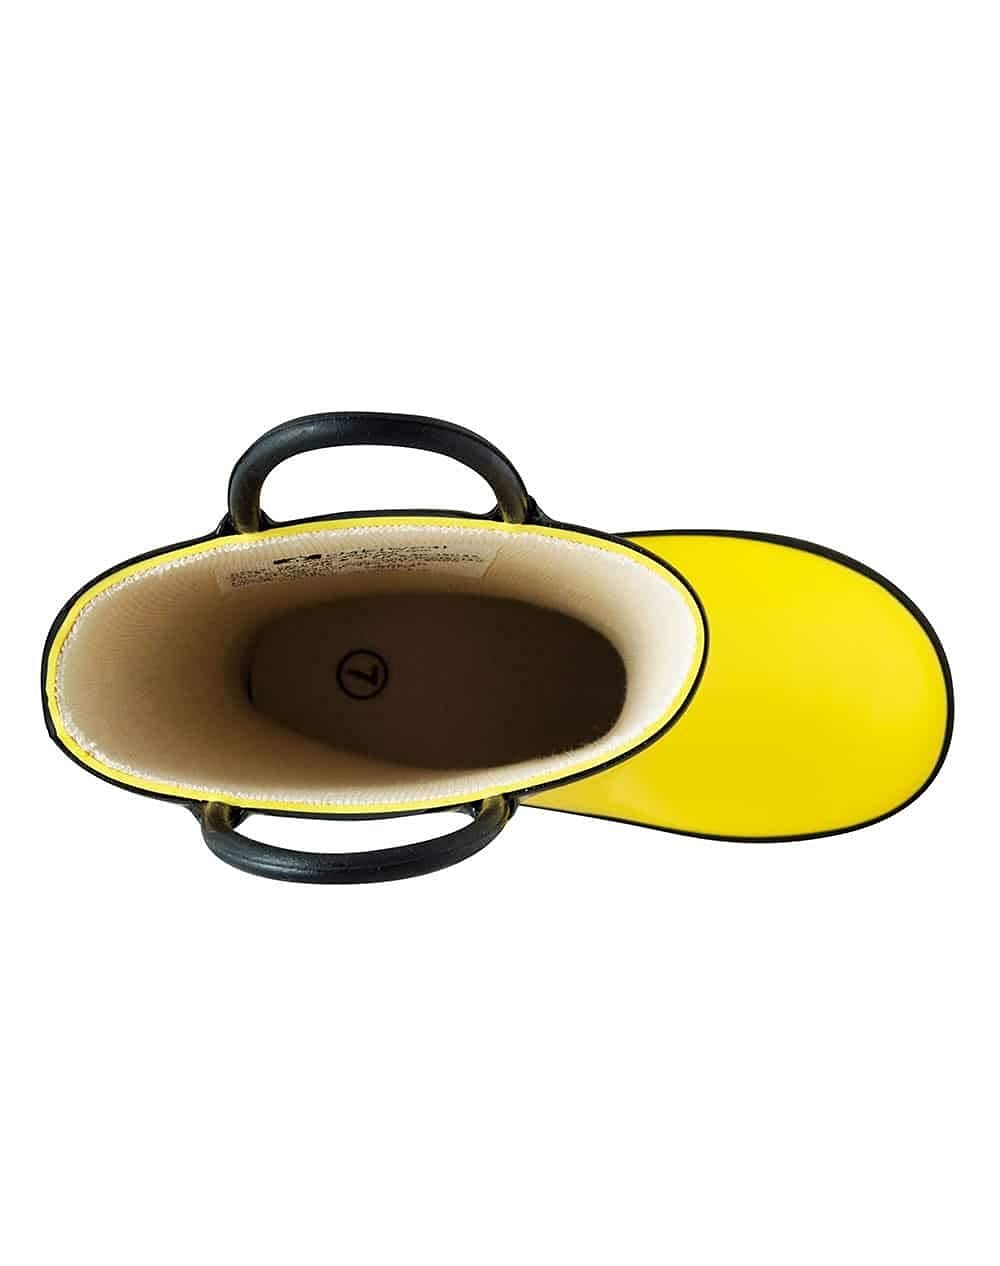 OAKI Kids Waterproof Rubber Rain Boots with Easy-On Handles.